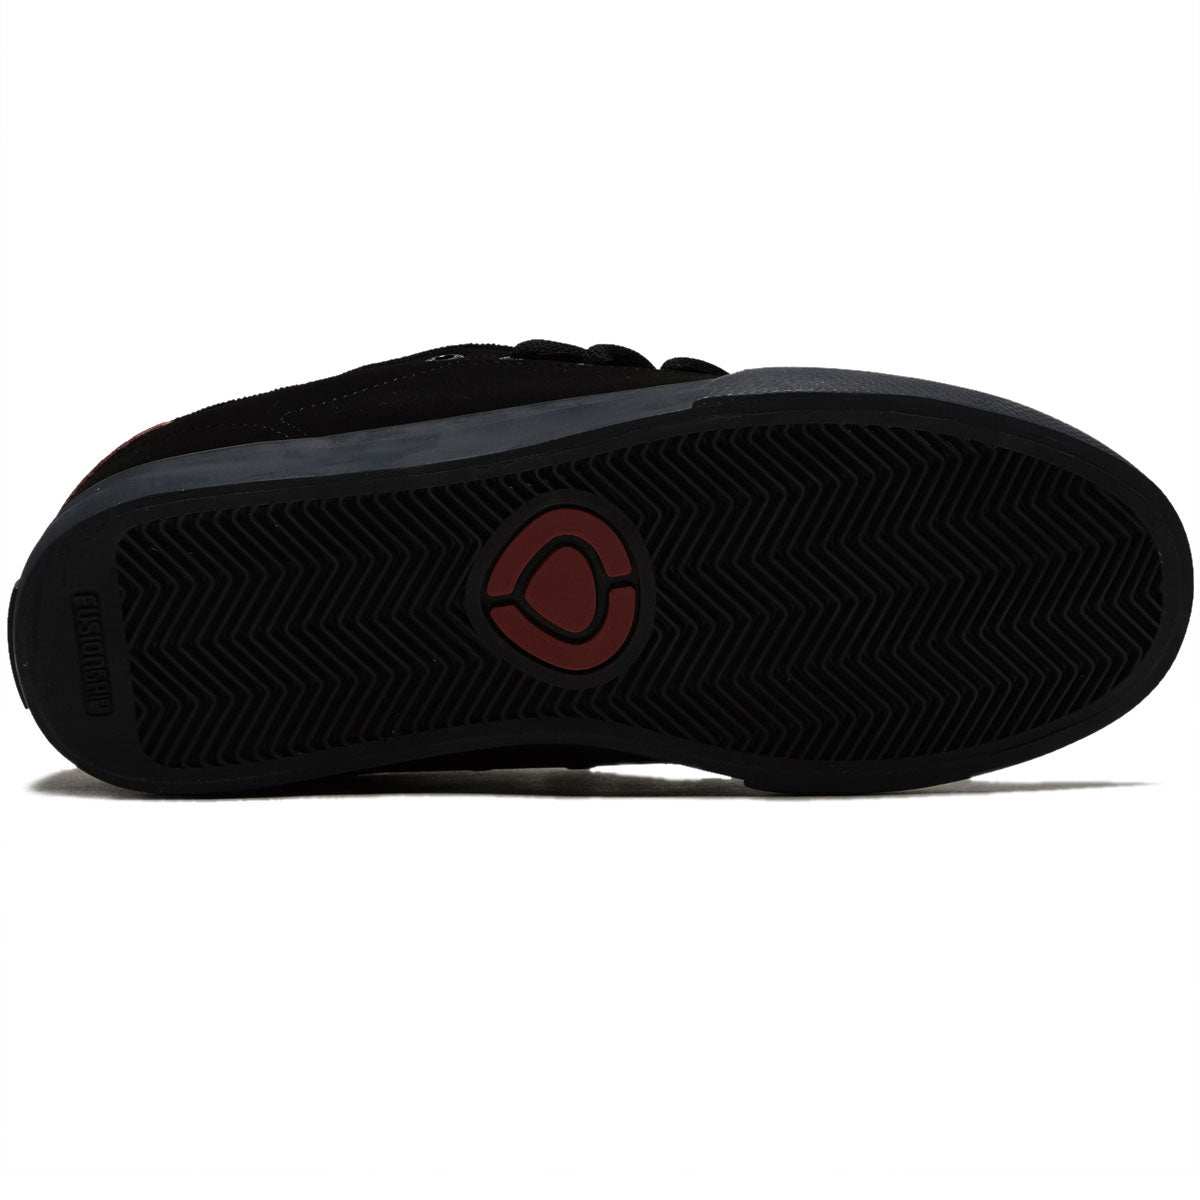 C1rca AL 50 Pro Shoes - Black/Scarlet image 4